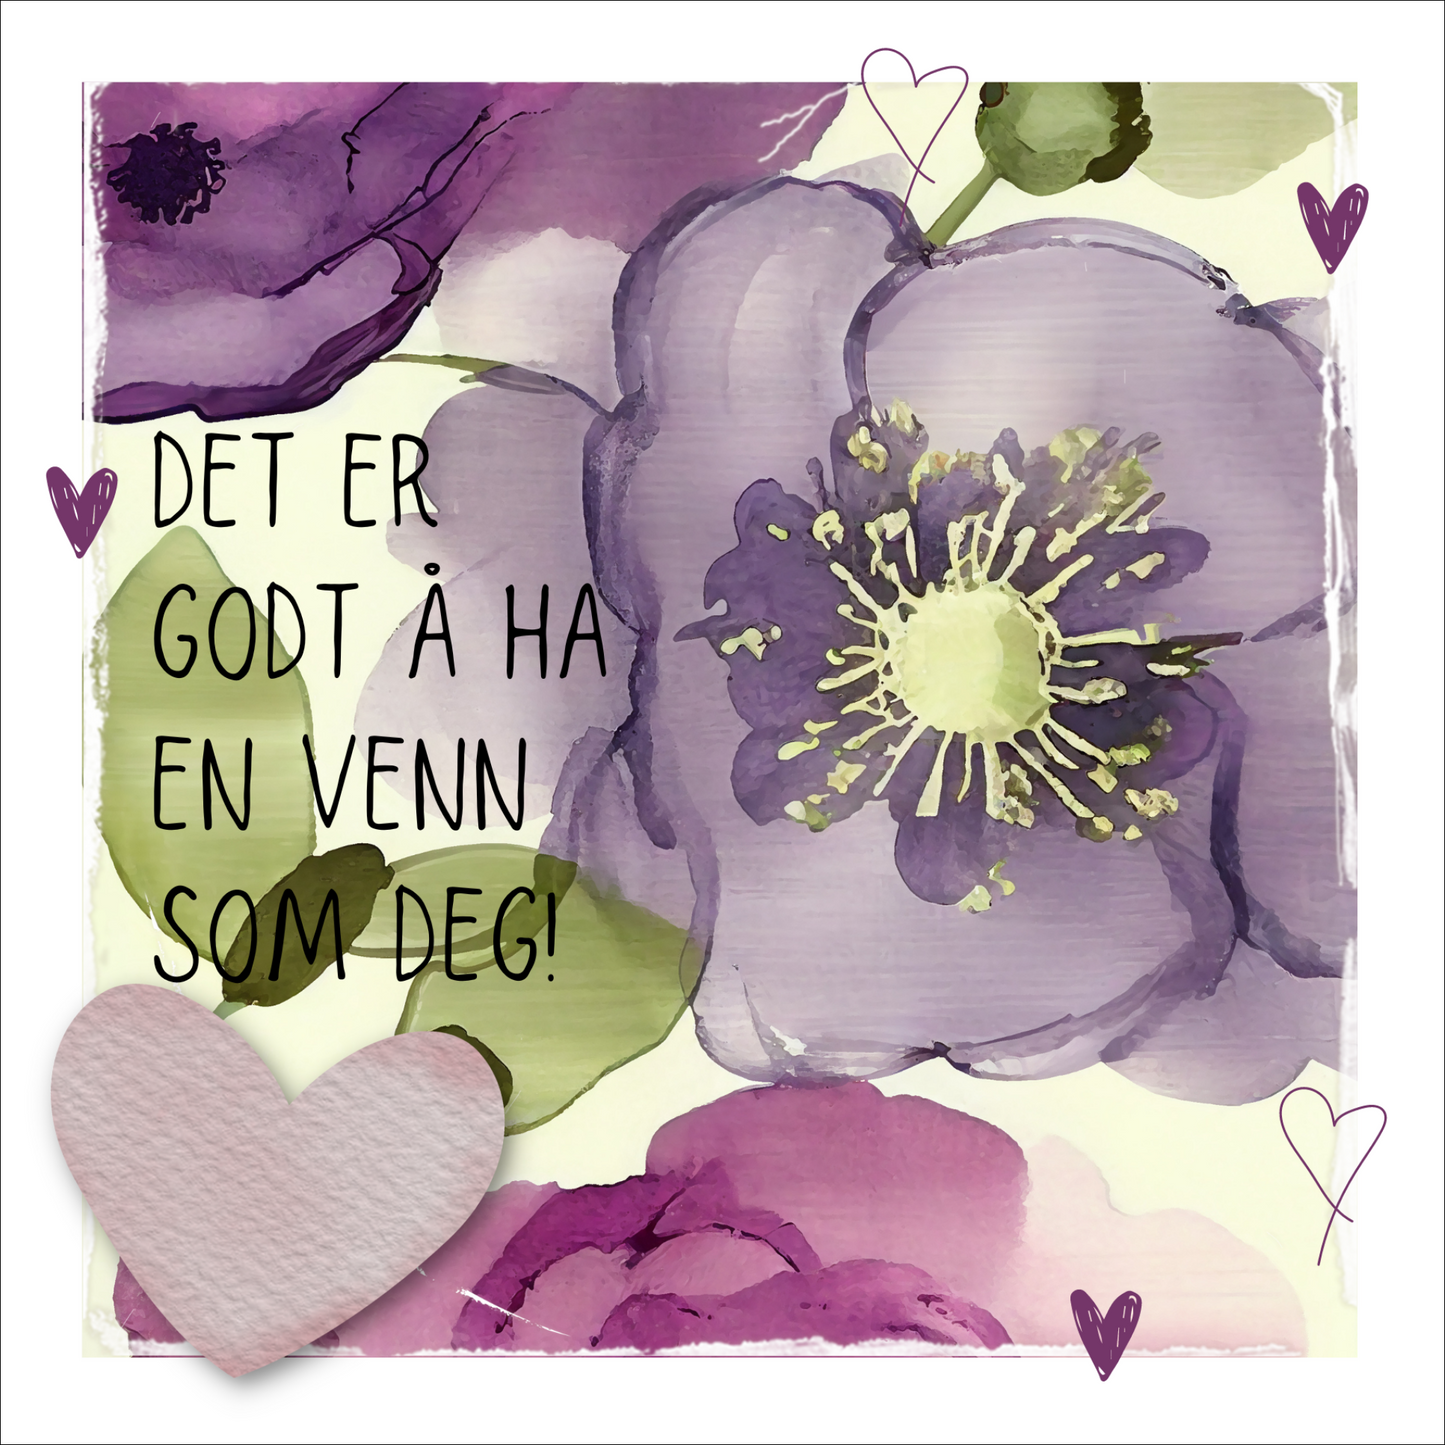 Kort med tekst "Det er godt  ha en venn som deg" - med lilla blomster og grønne blader på beige bakgrunn. 